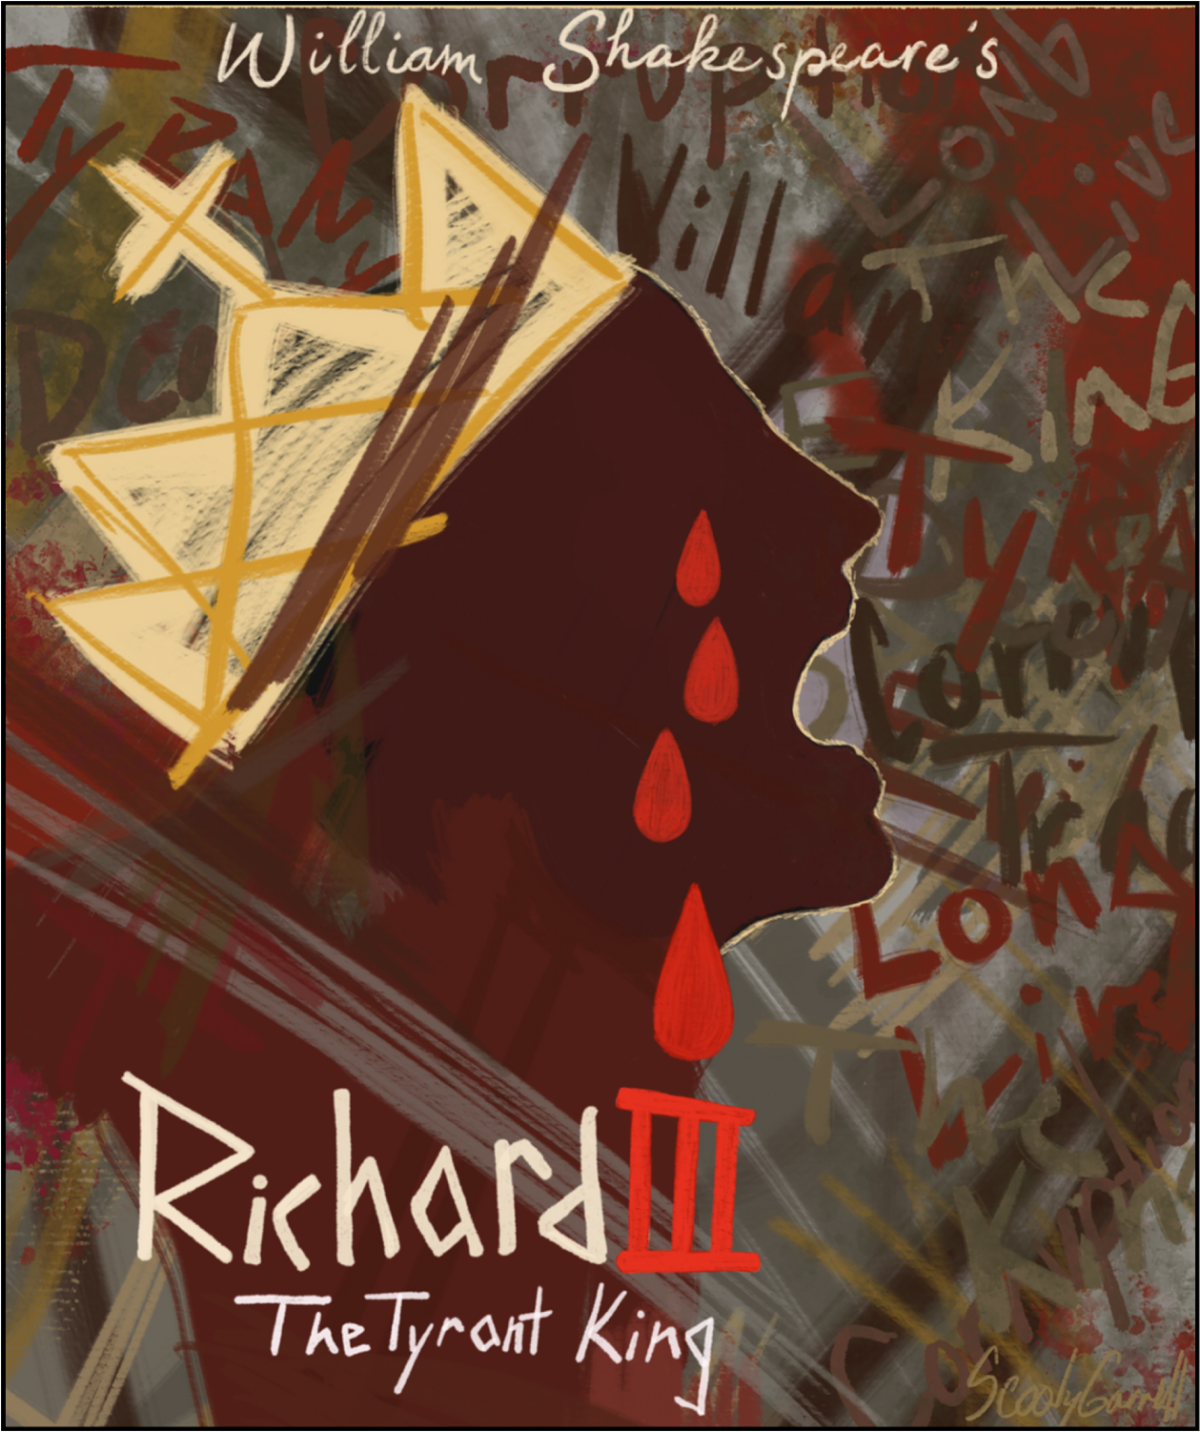 richard iii shakespeare poster